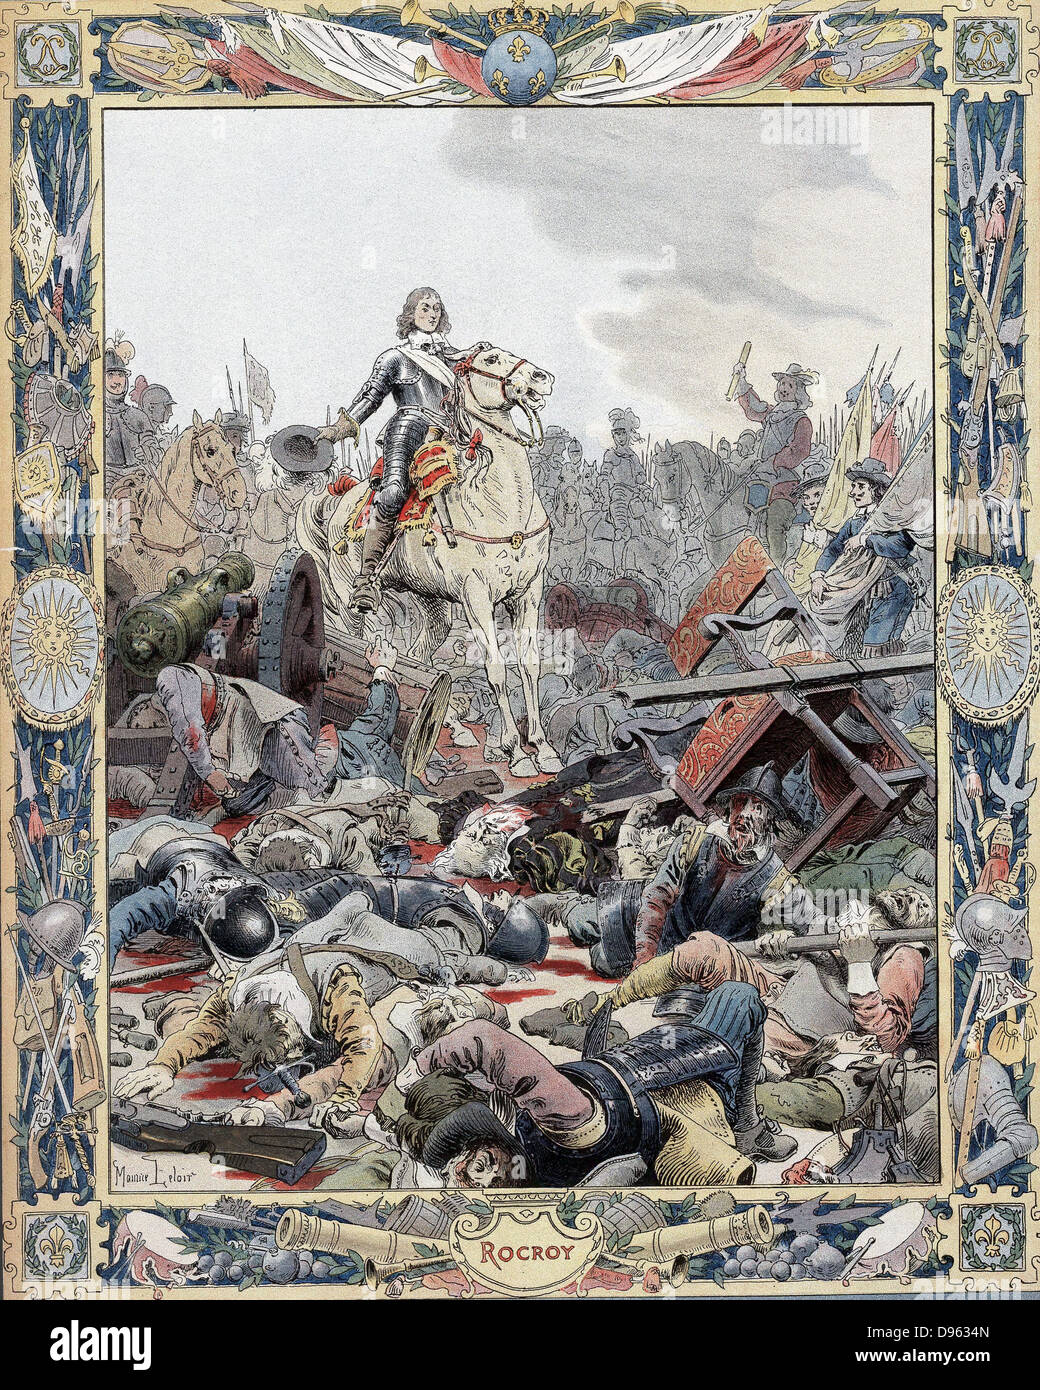 Trenta anni fa la guerra: la Battaglia di Rocroi (Rocroy), 19 maggio 1643, lo spagnolo ha sconfitto dal francese sotto il Duca d'Enghien, Prince de Conde (1621-1686) noto come il Grande (Grand) Conde. Foto Stock